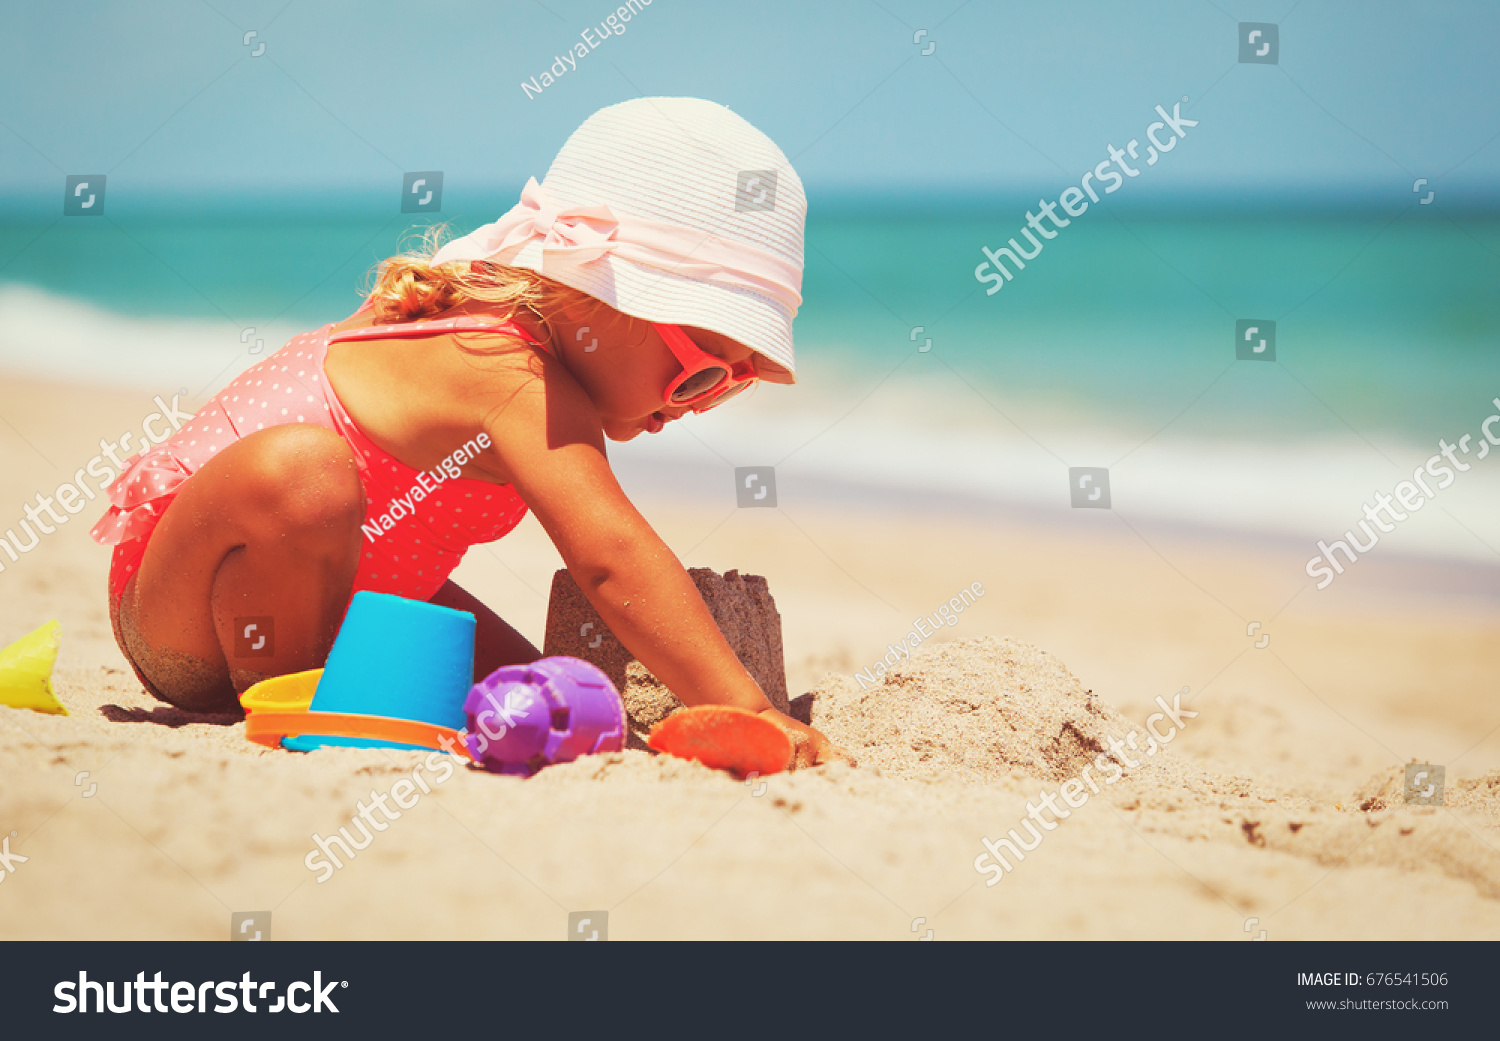 cute little girl play with sand on beach #676541506